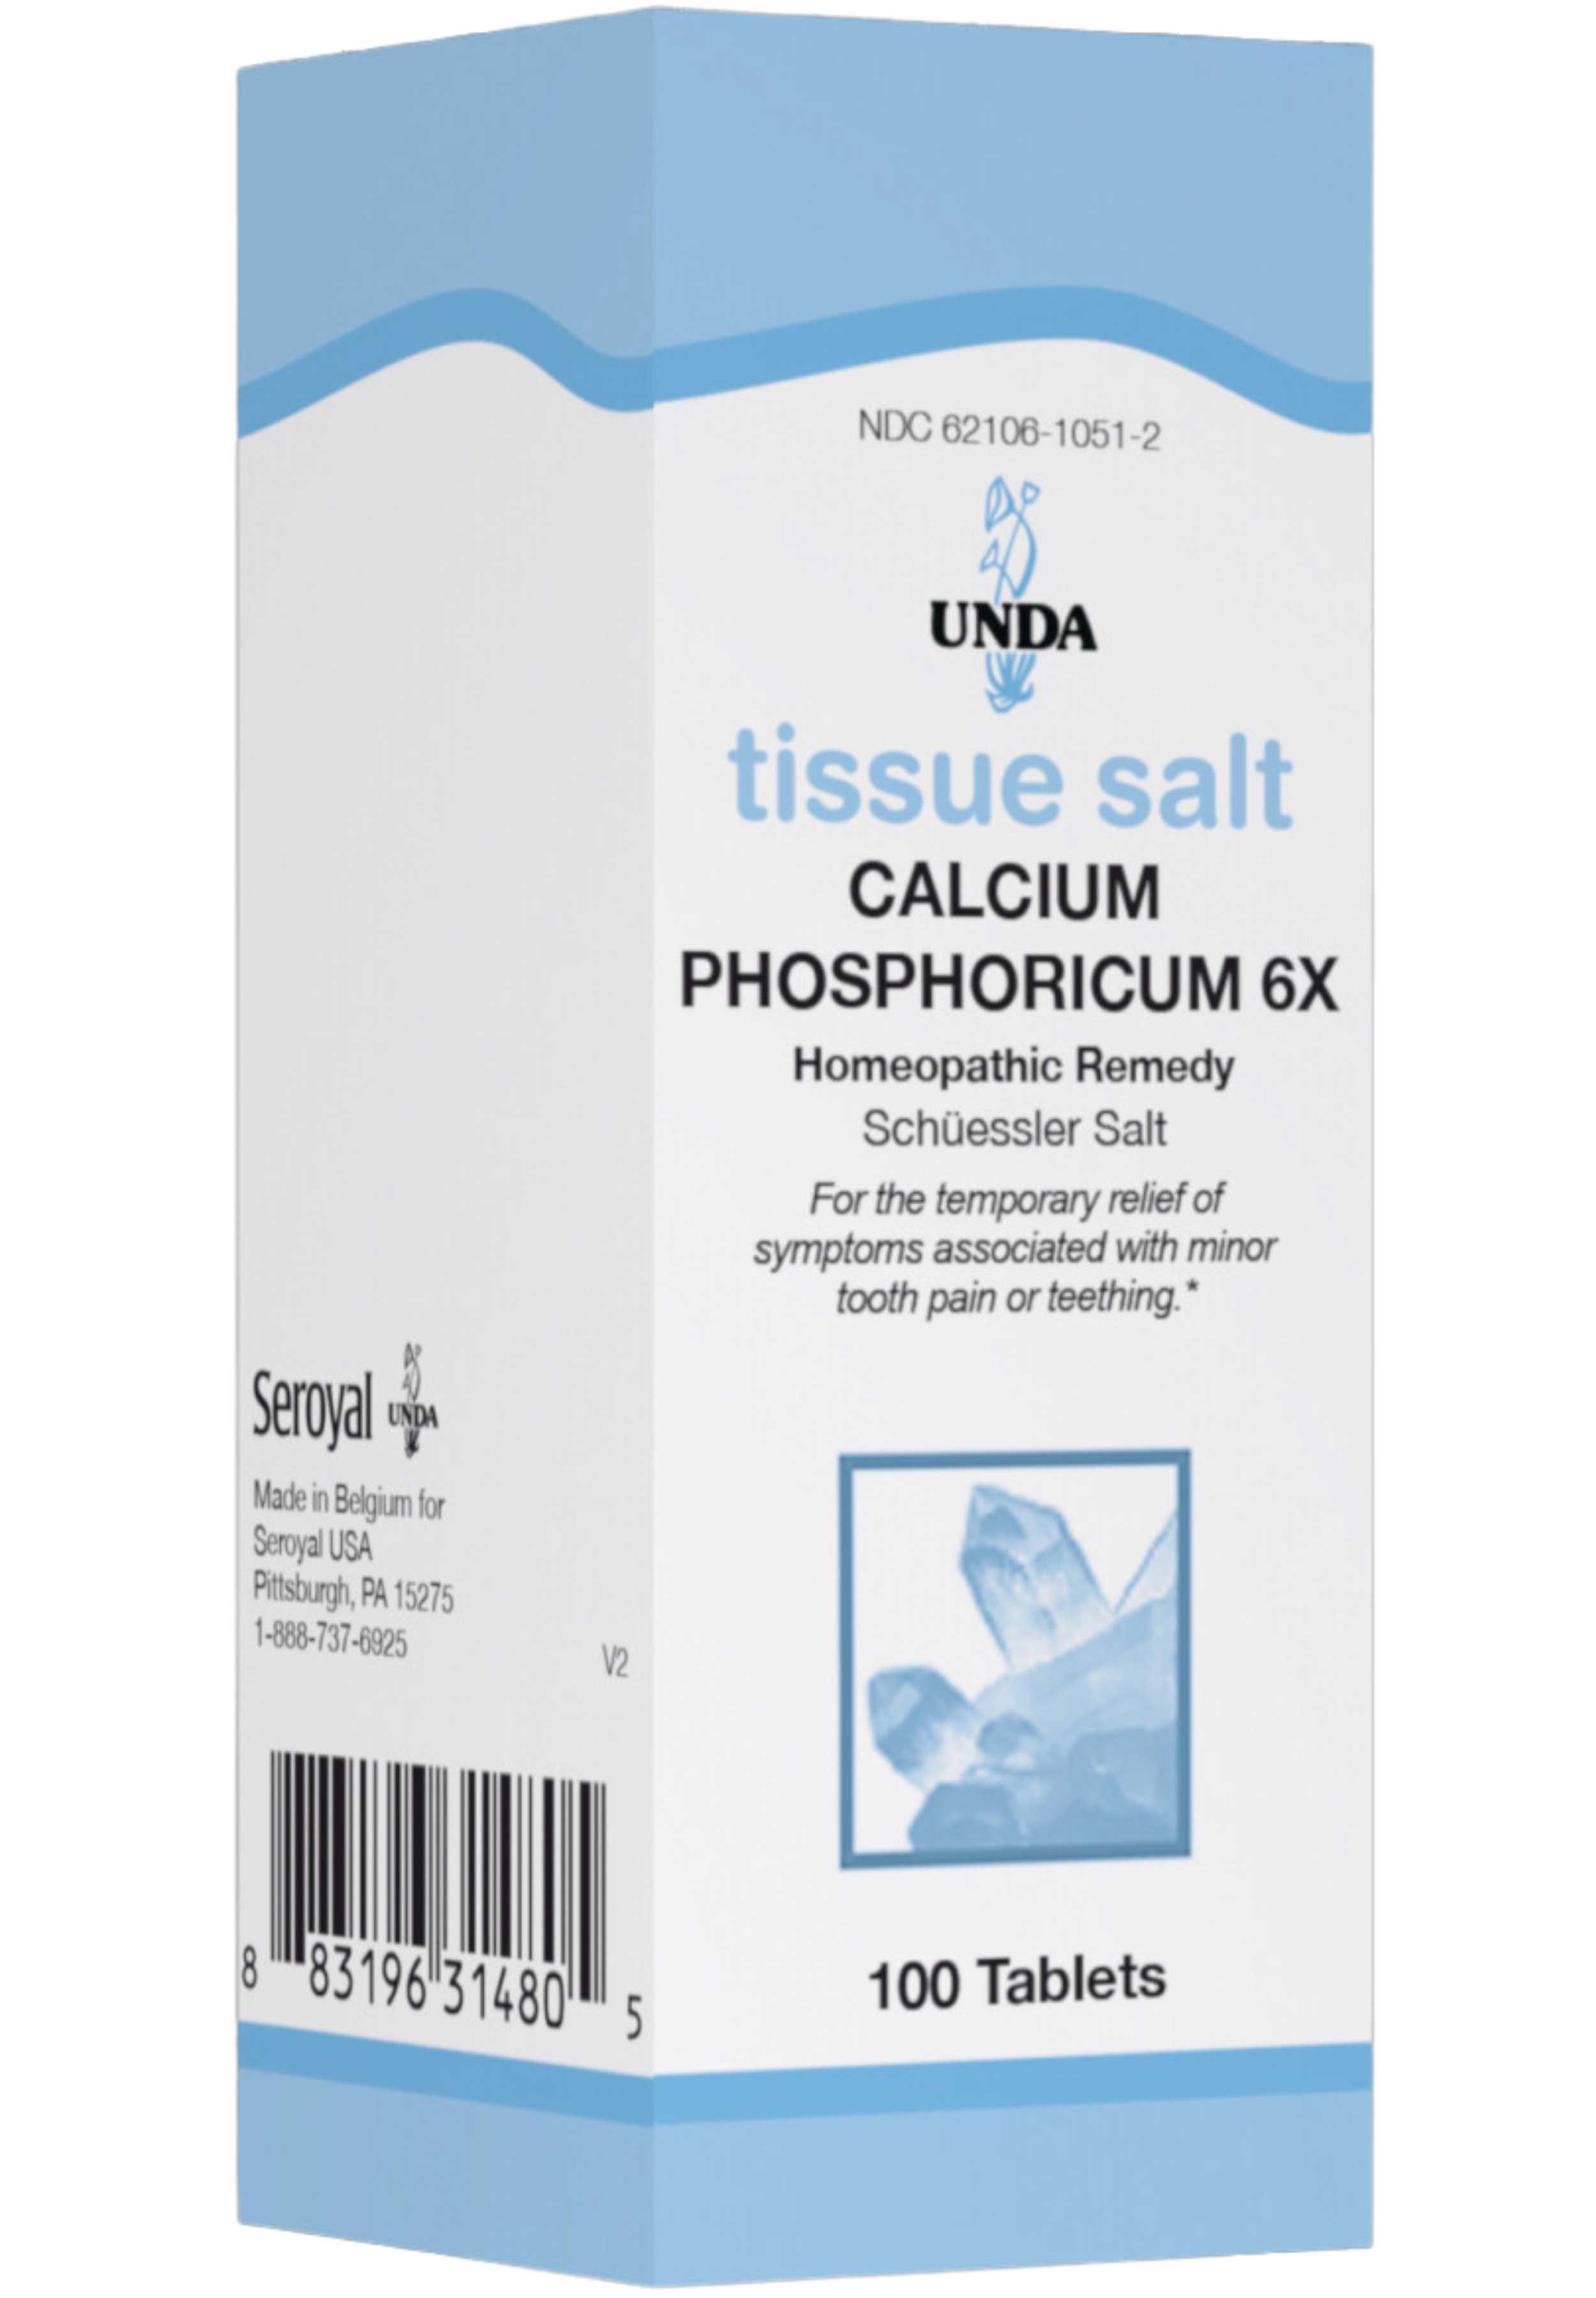 UNDA Calcium Phosphoricum 6X (Salt)